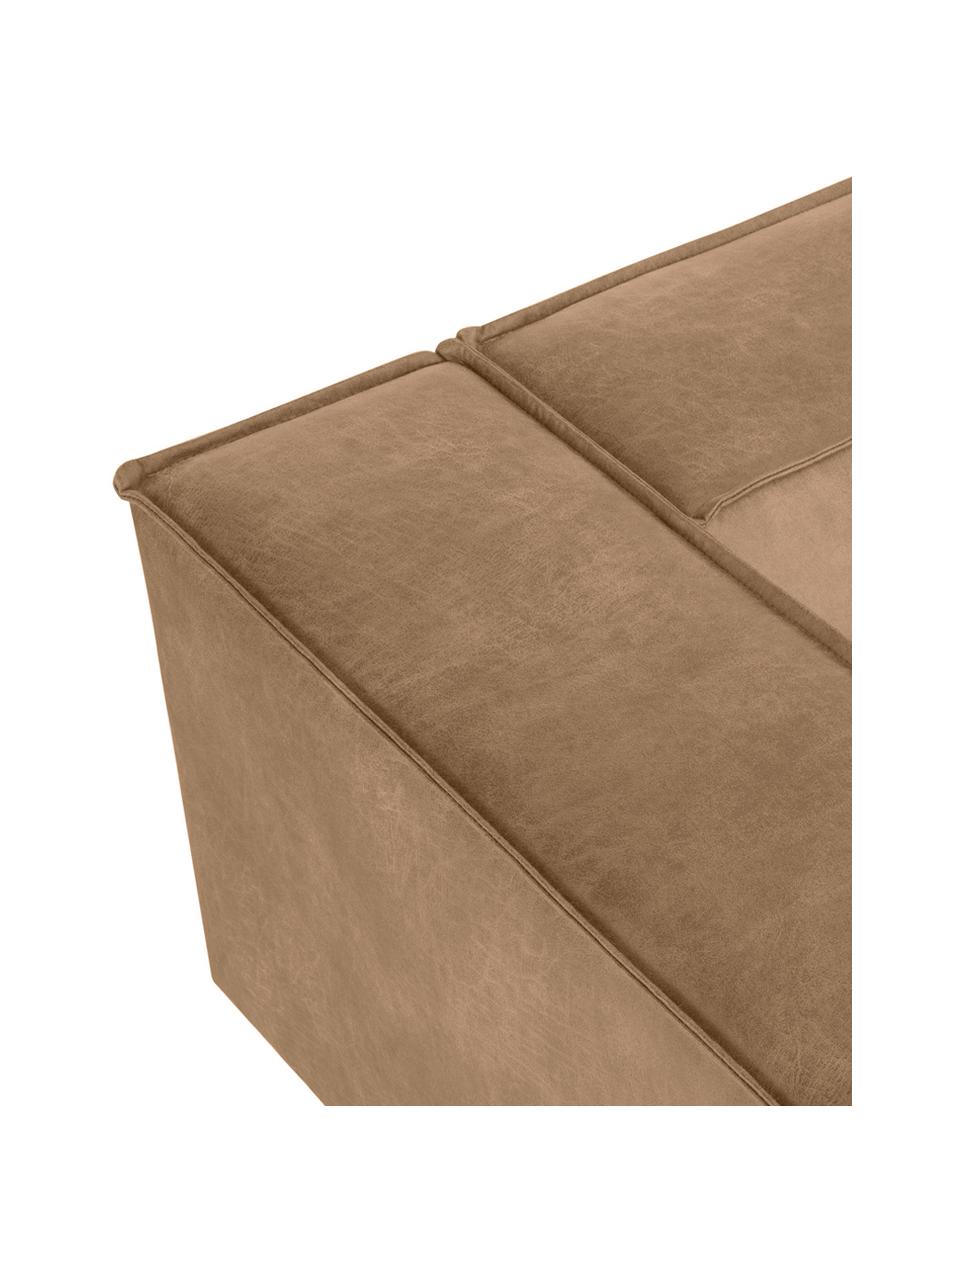 Sofa skórzana z metalowymi nogami Abigail (3-osobowa), Tapicerka: 70% skóra, 30% poliester , Nogi: metal lakierowany, Koniakowy, S 230 x G 95 cm